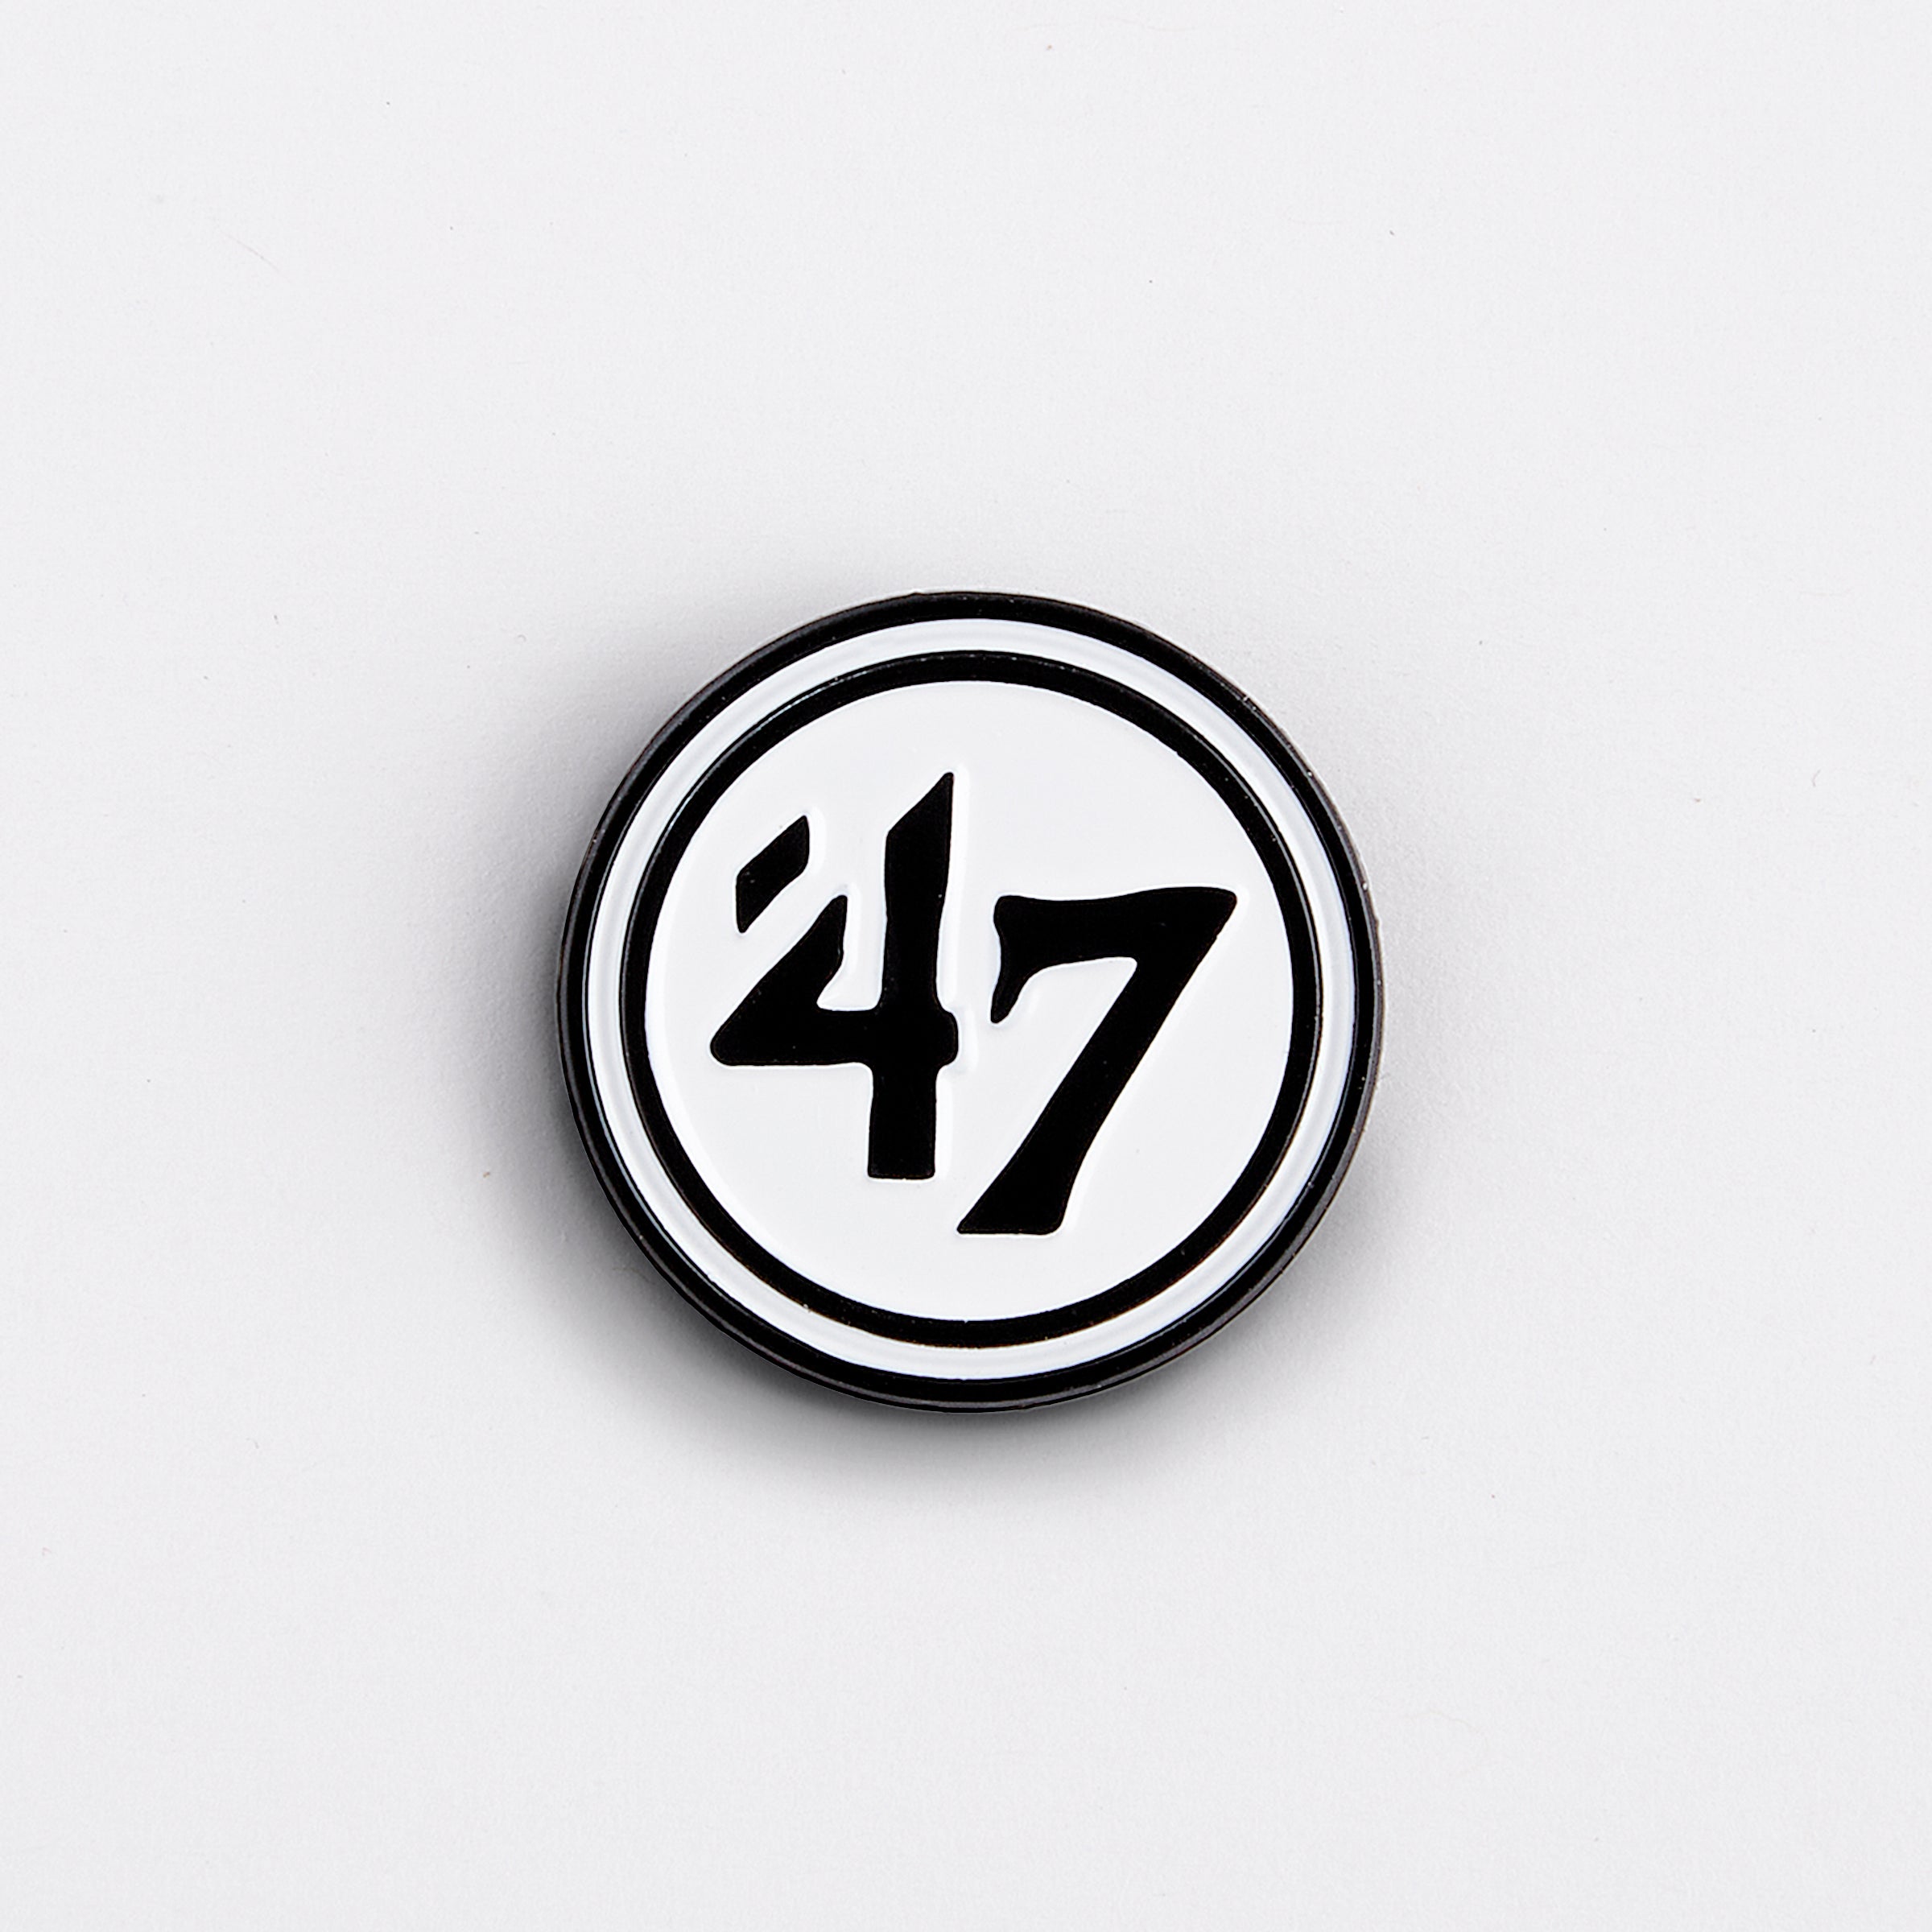 '47 Logo Pin's